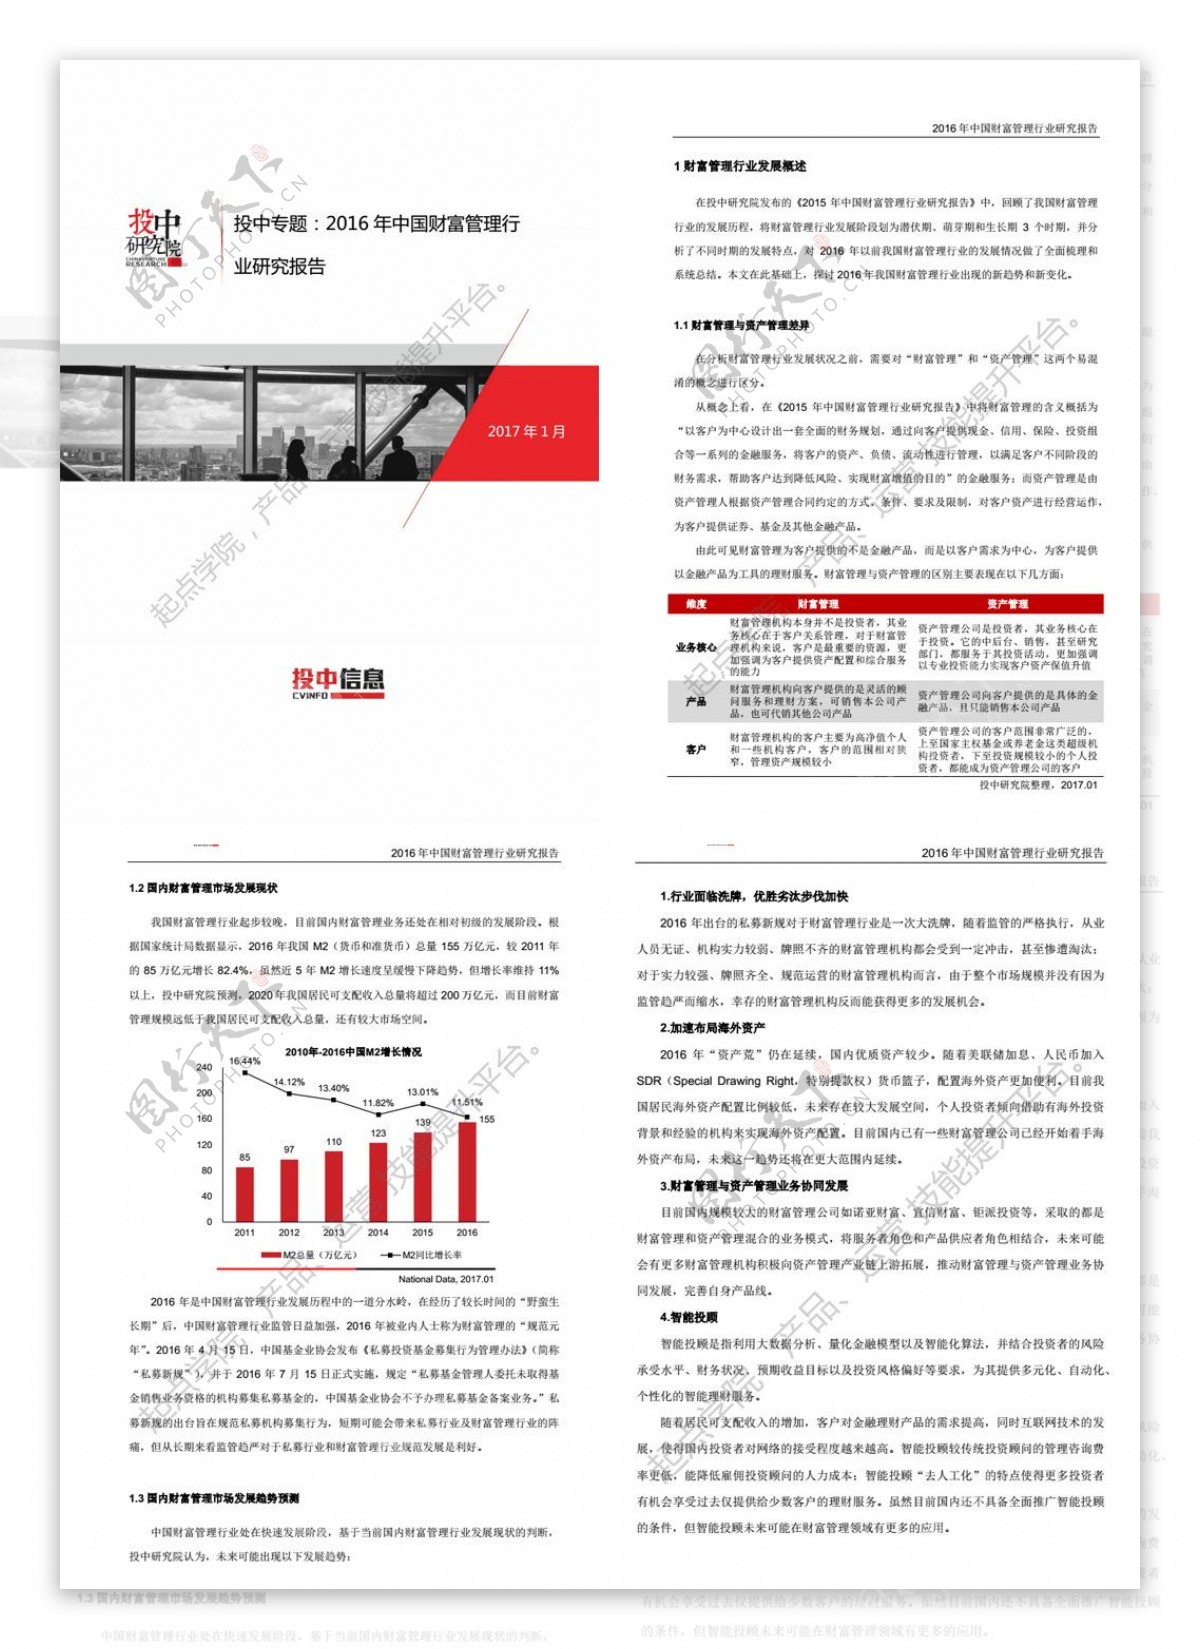 投中研究院2016年中国财富管理行业研究报告